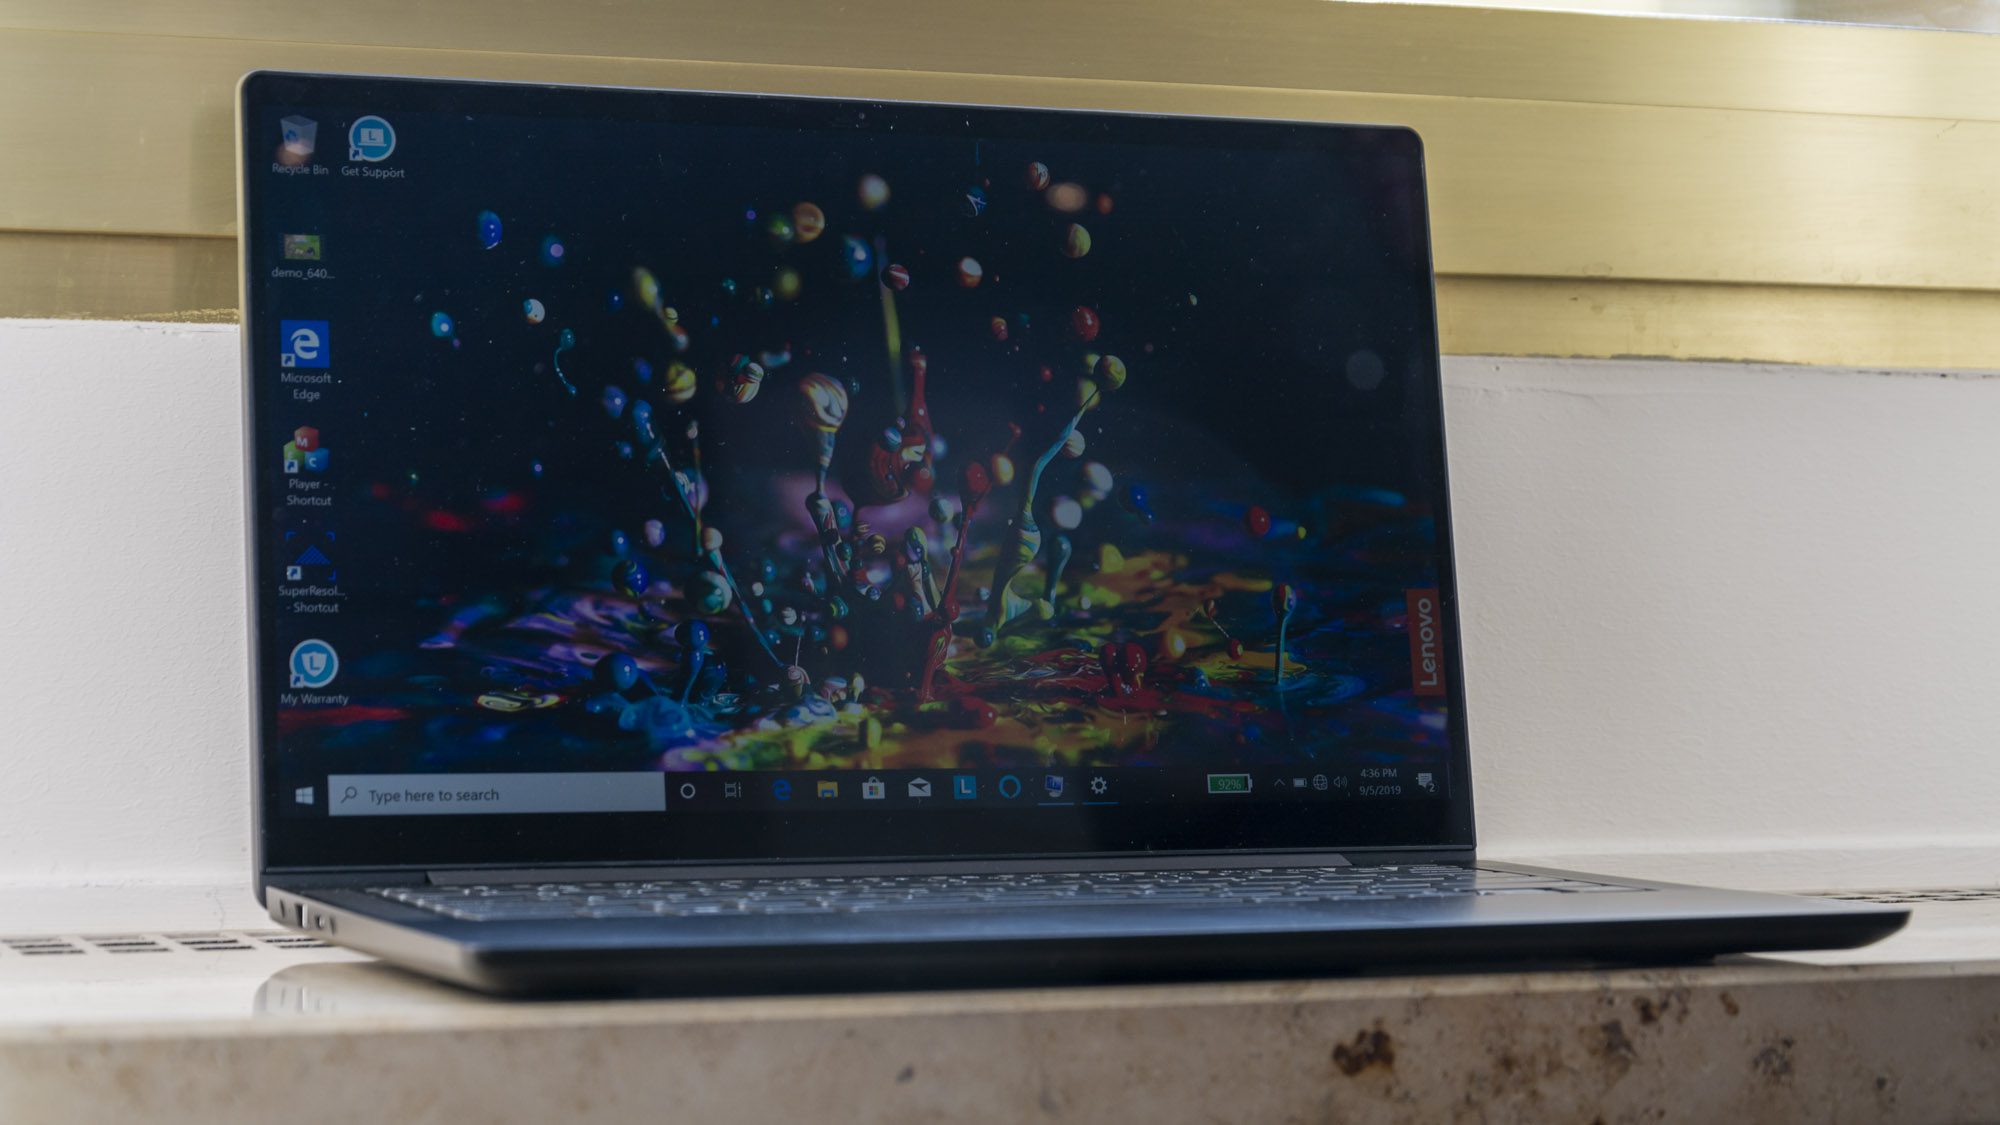 Testbericht zum Lenovo Yoga S740: Auf der IFA 2019 wurden luxuriöse, aber erschwingliche 14- und 15-Zoll-Laptops vorgestellt